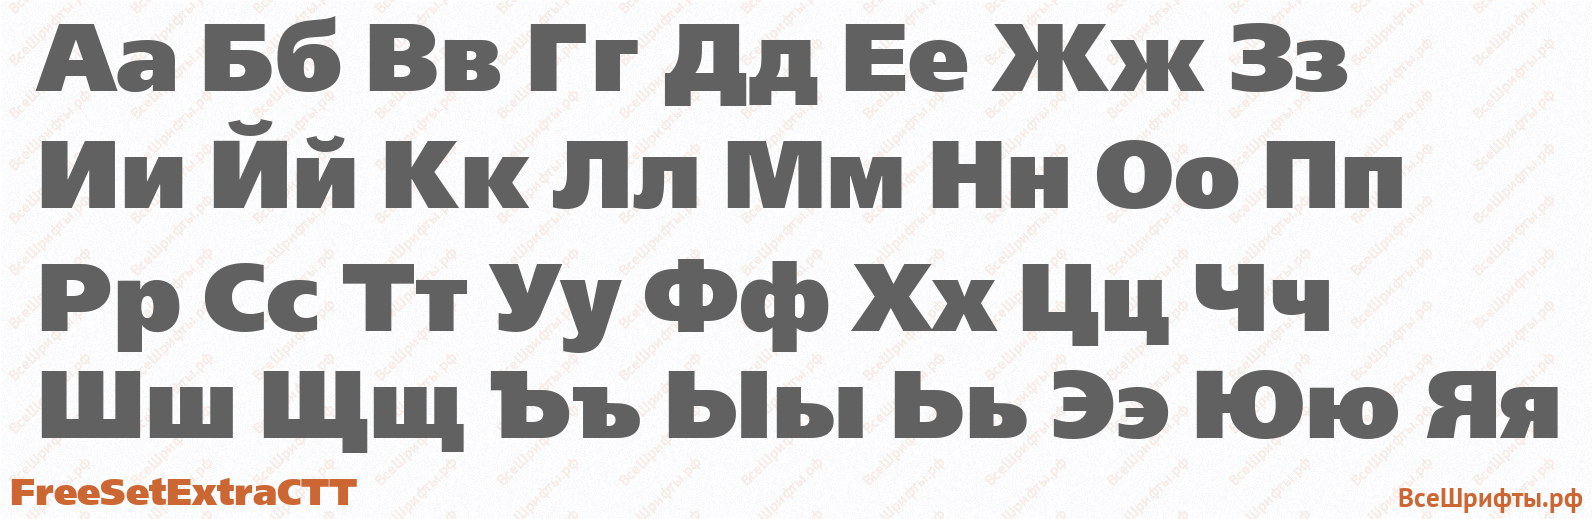 Шрифт FreeSetExtraCTT с русскими буквами